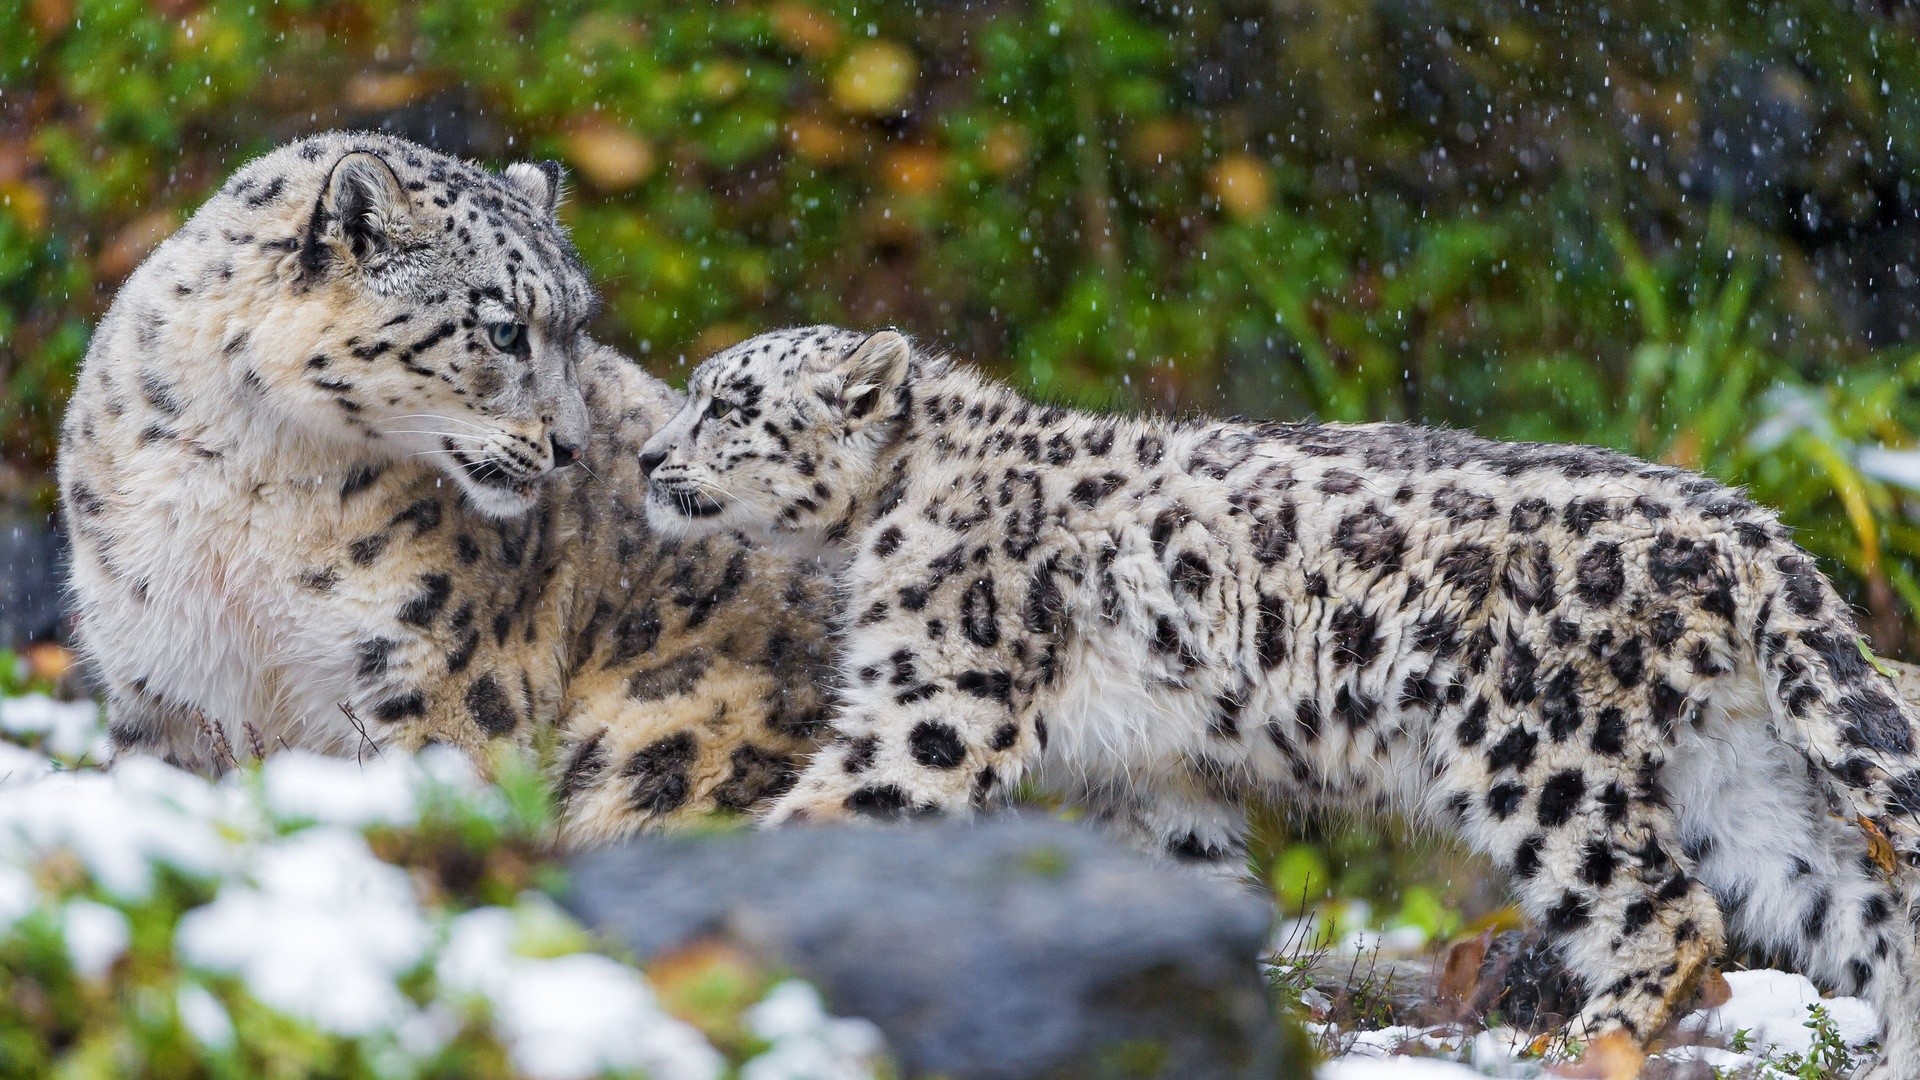 1920x1080 best images about snow leopards on Pinterest Animals Â· Baby LeopardSnow ...